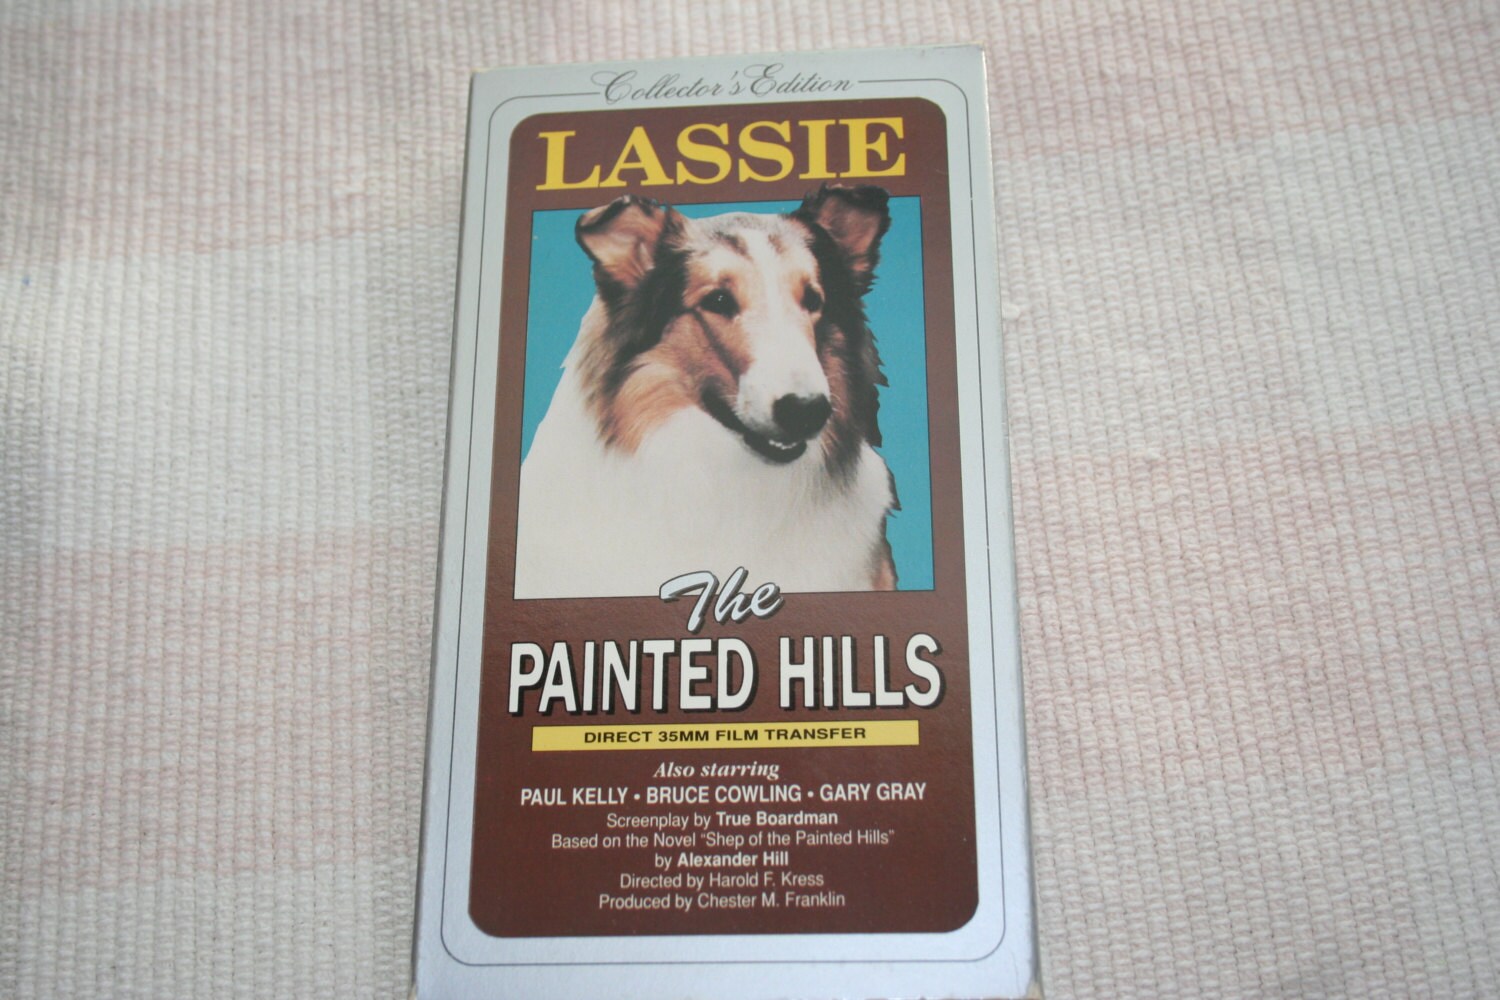 Global Screen Seals Deals for Sequel 'Lassie - A New Adventure